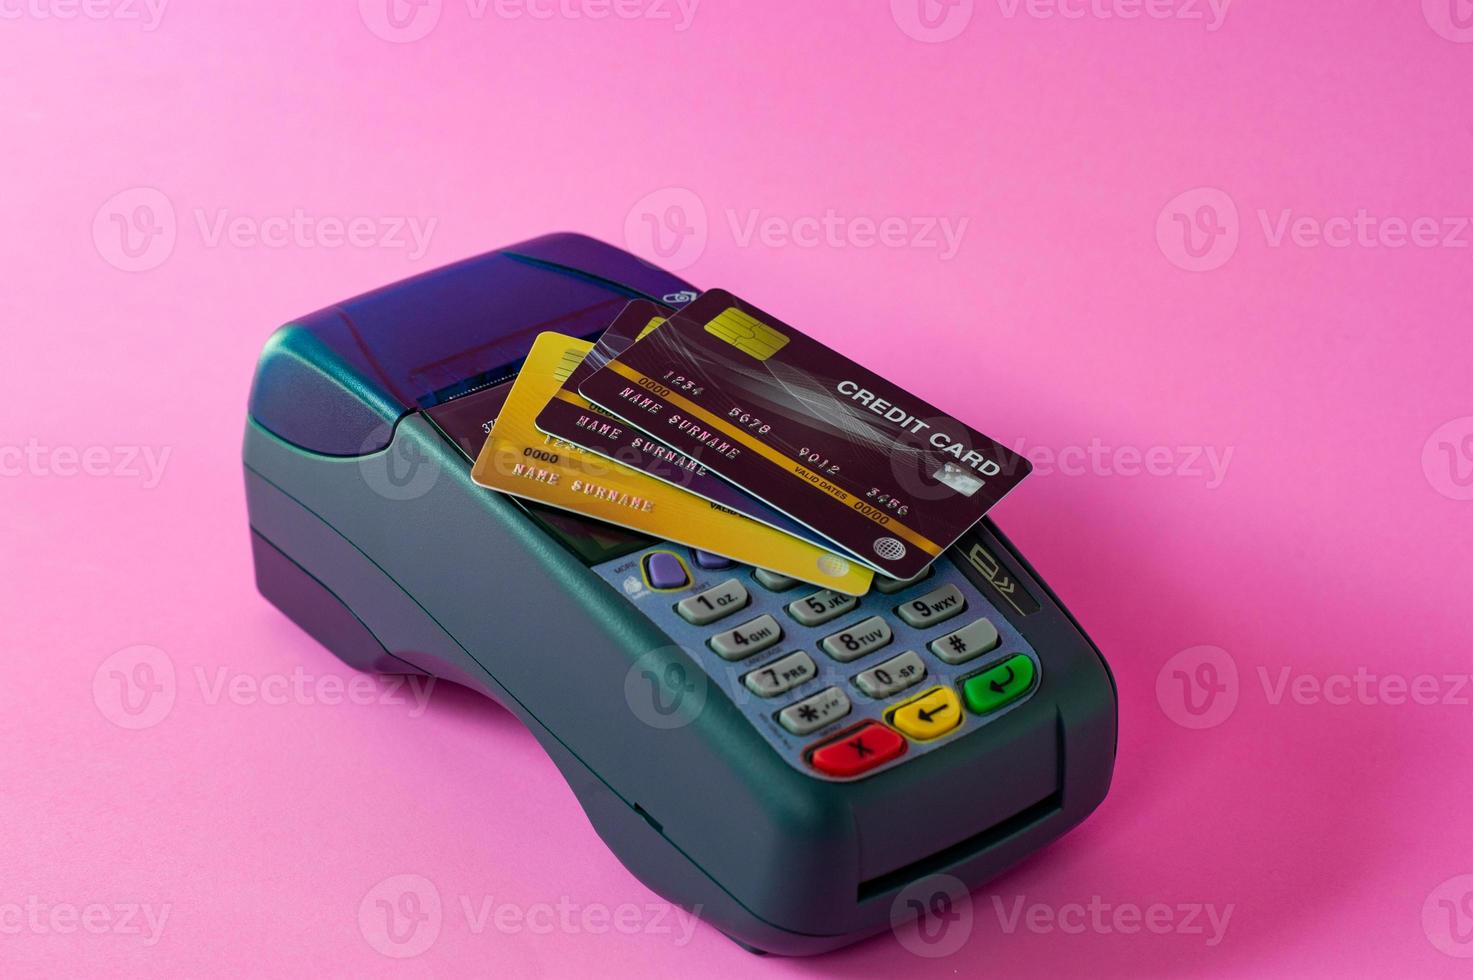 cartão de crédito e scanner de cartão de crédito em um fundo rosa foto